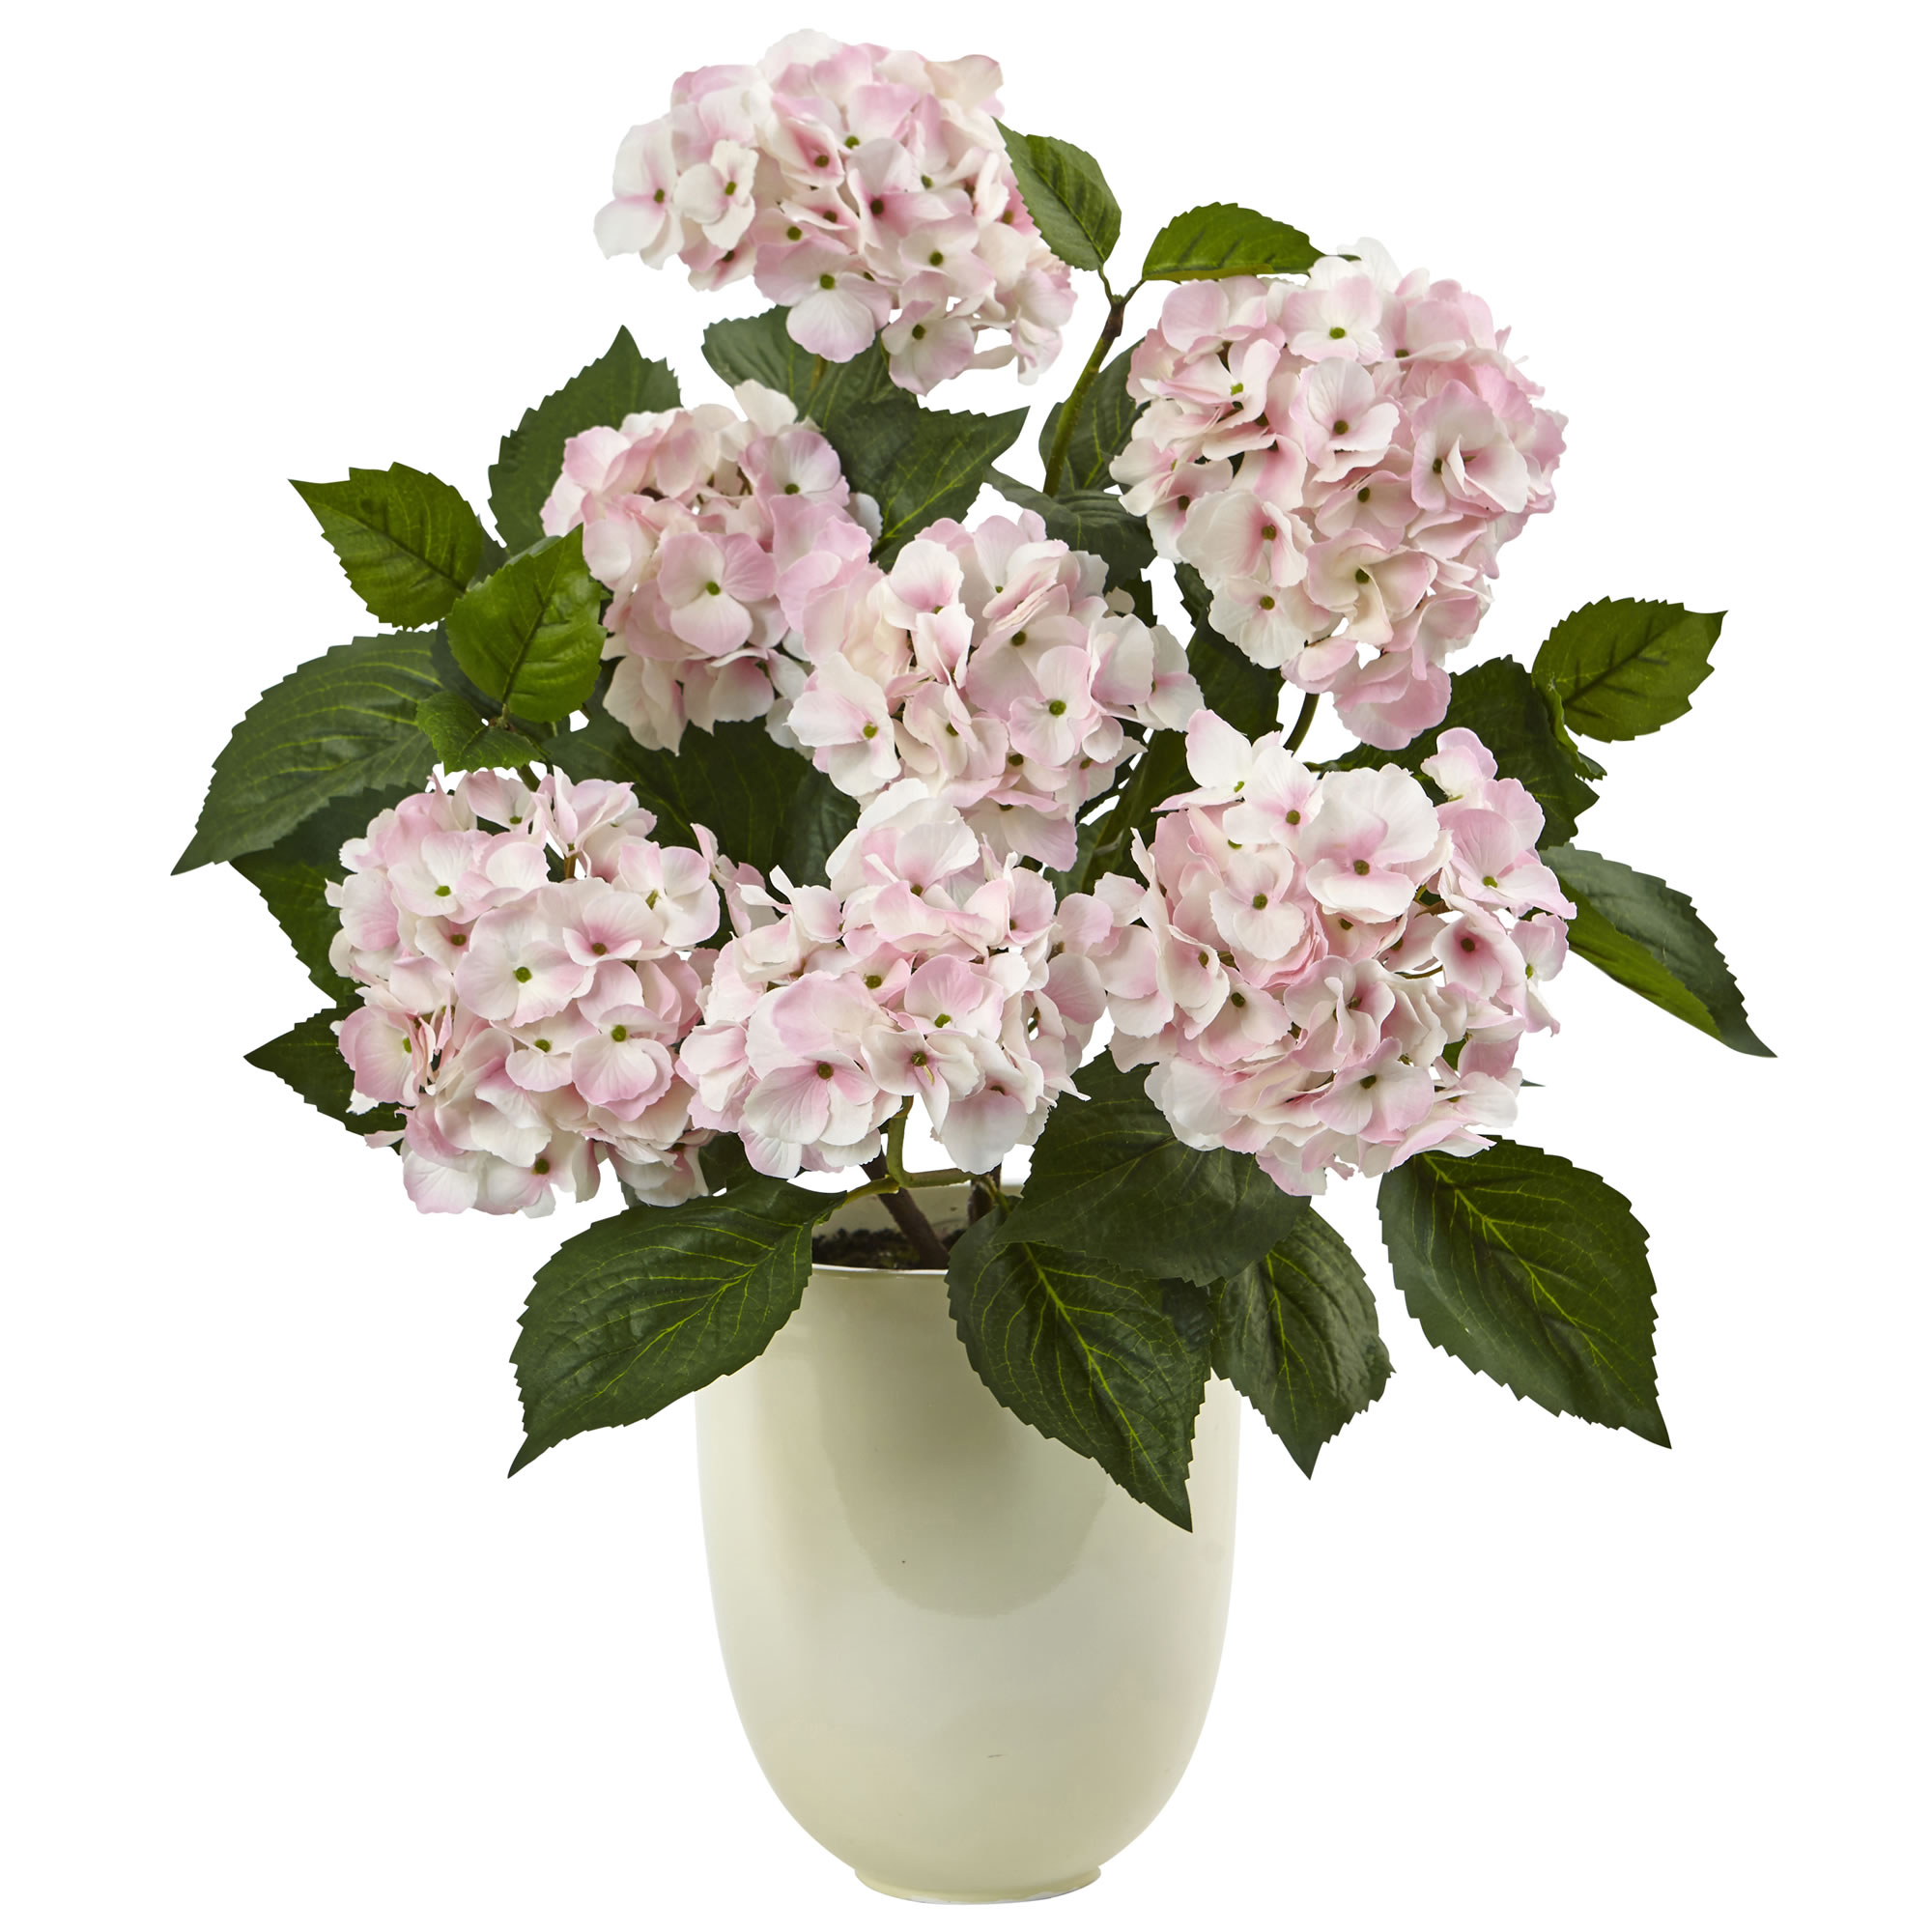 22 inch White, Pink Hydrangea in White Planter